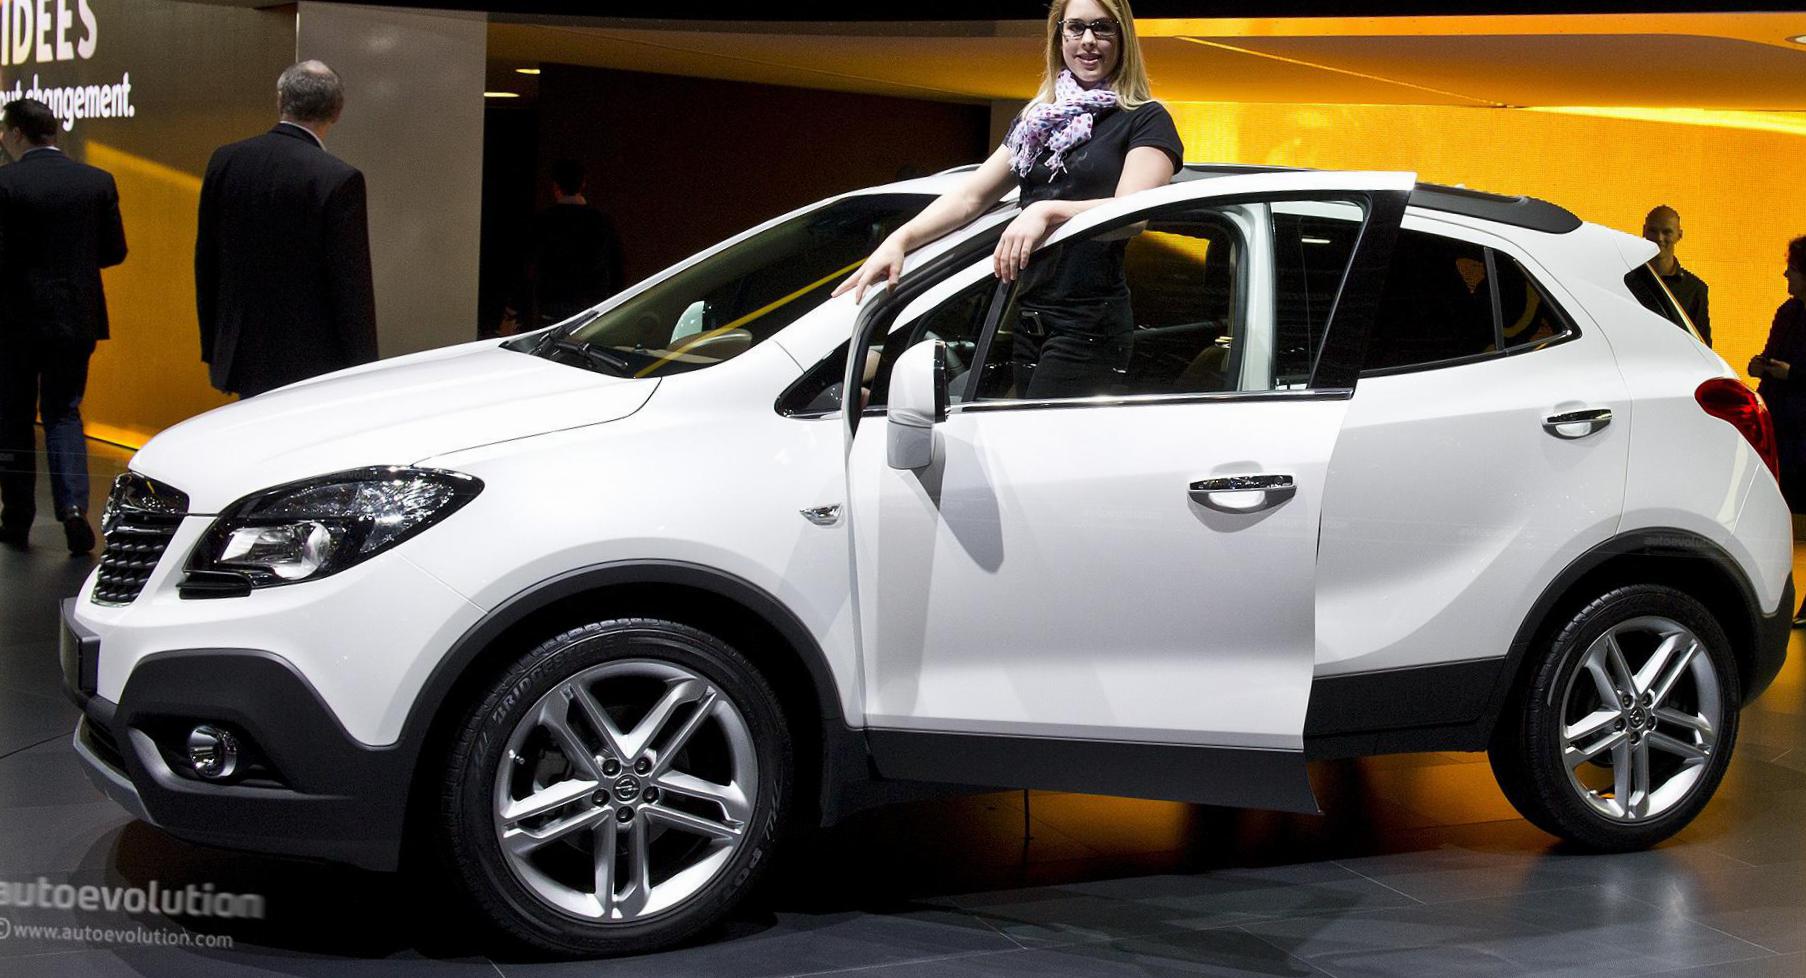 Opel Mokka review 2013